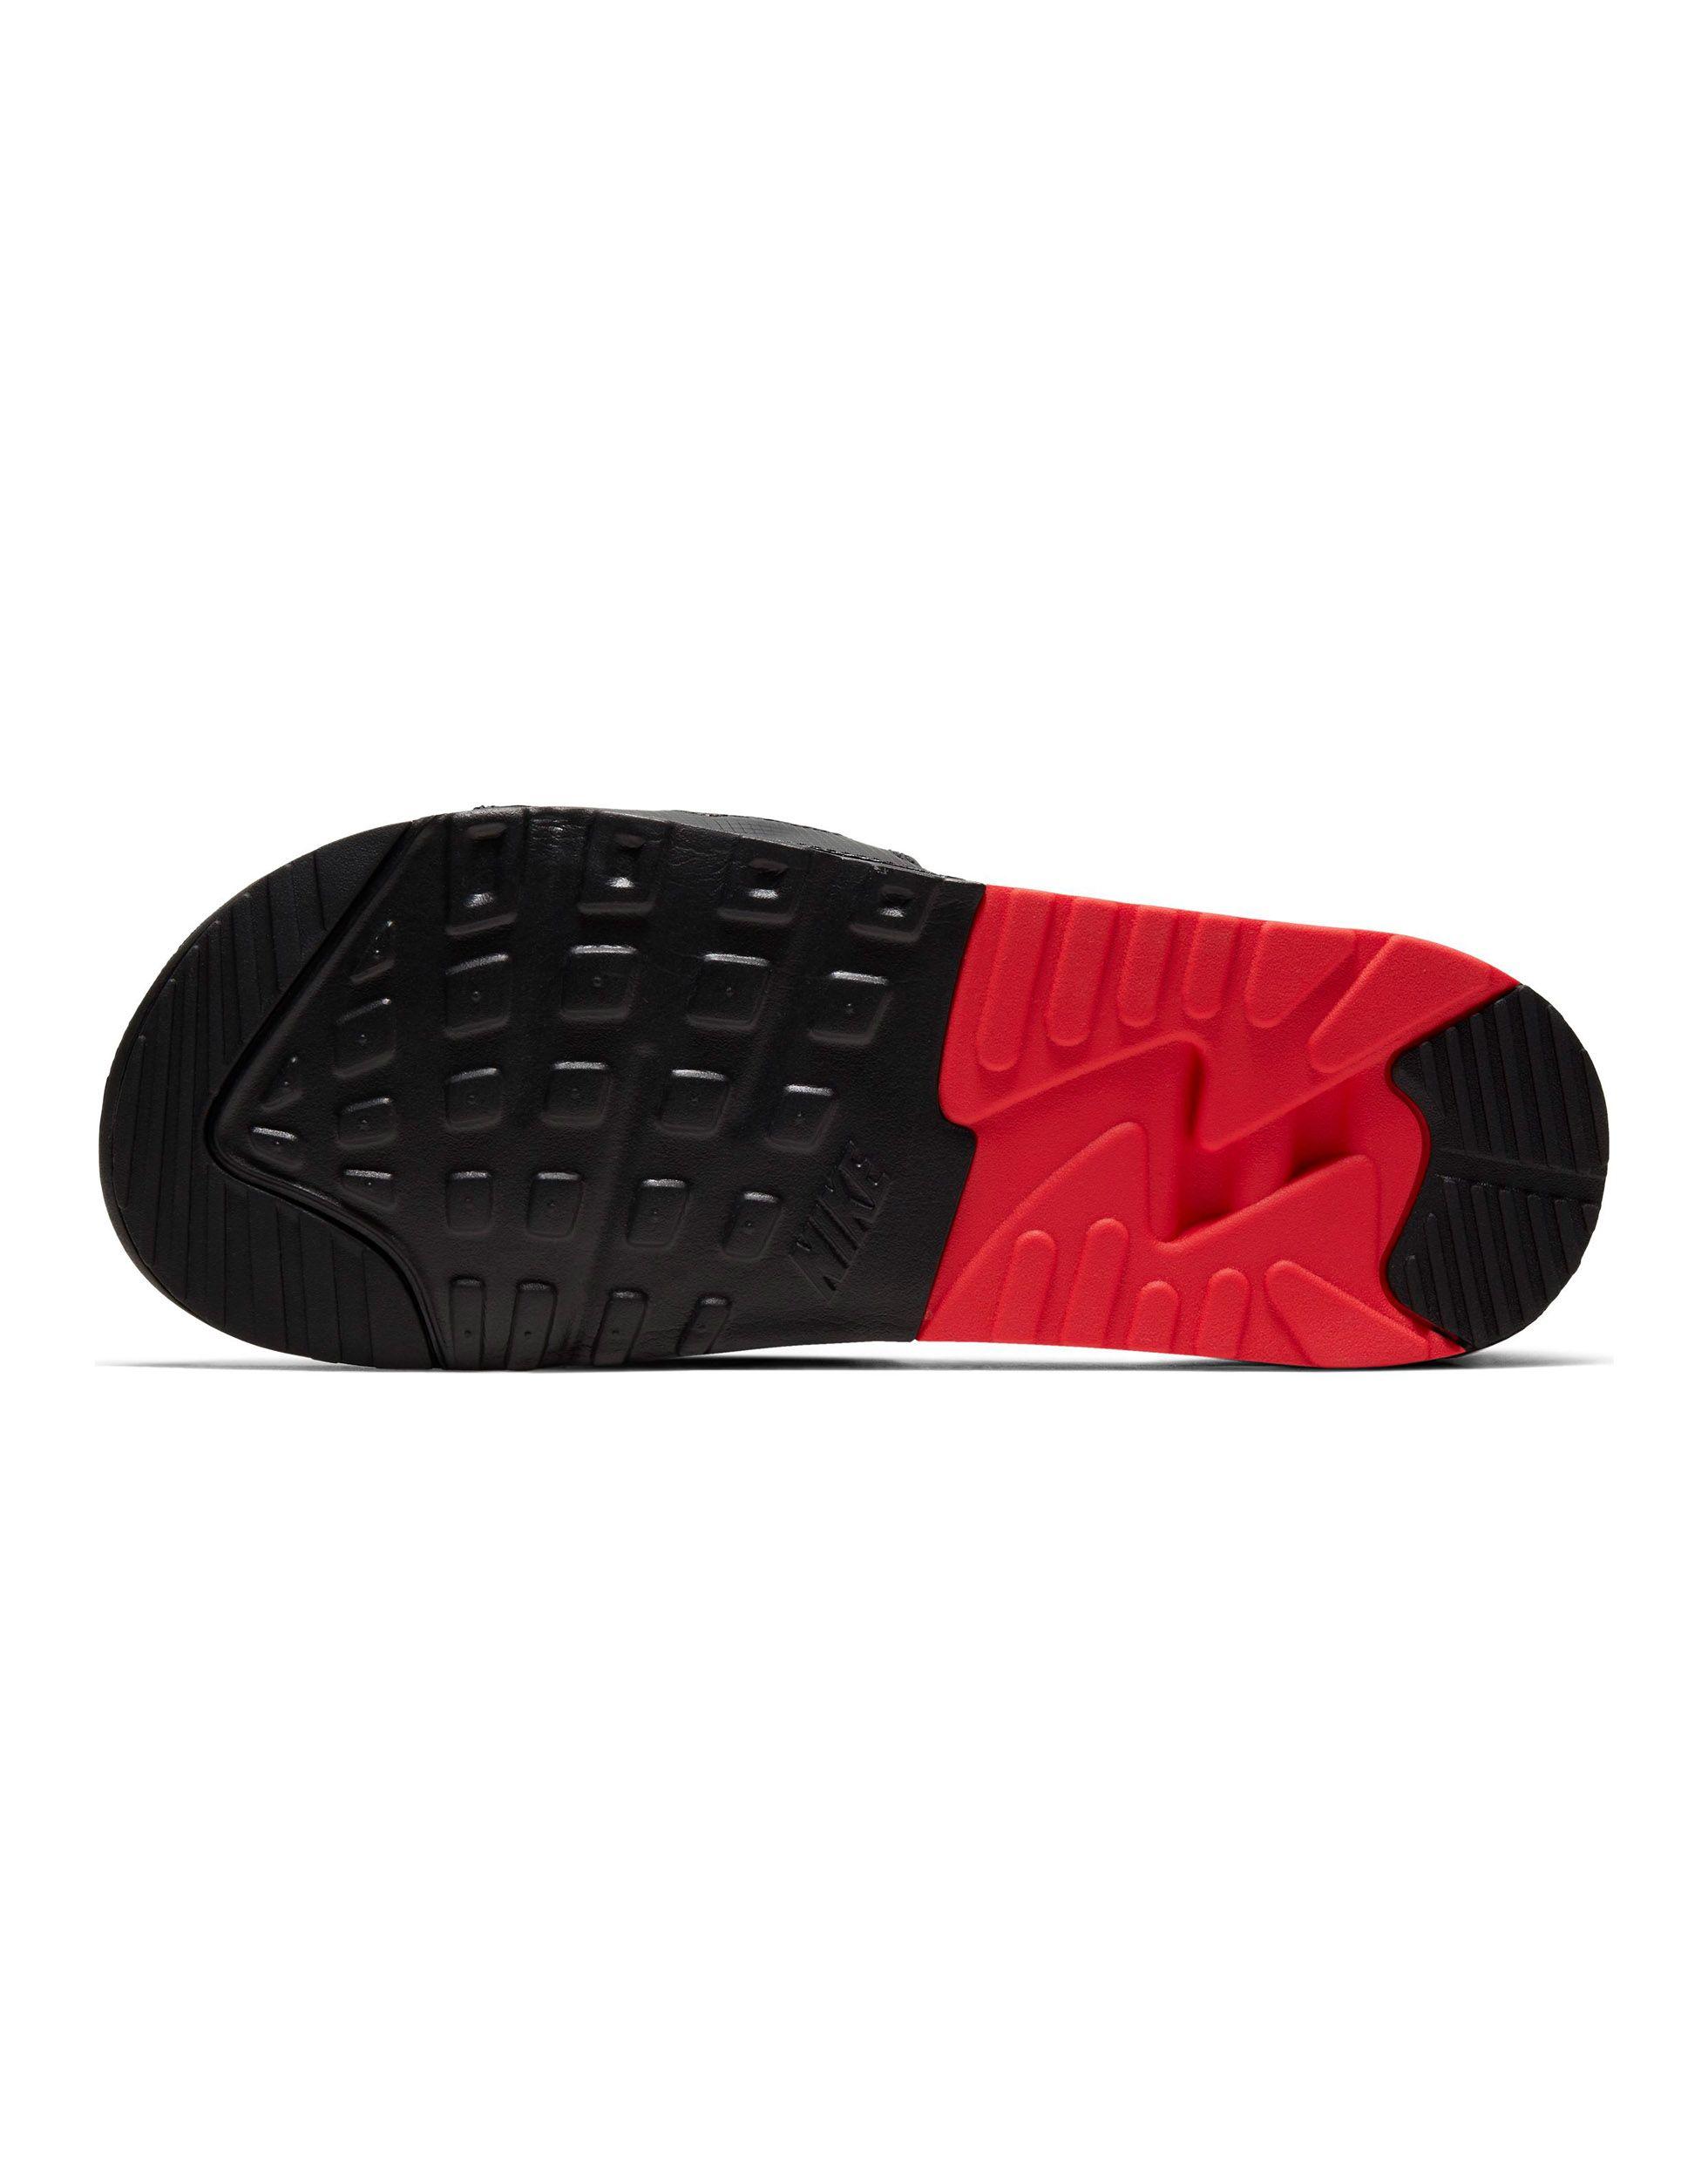 Chanclas rojas air max 90 Nike de Cuero de color Rojo para hombre - Lyst